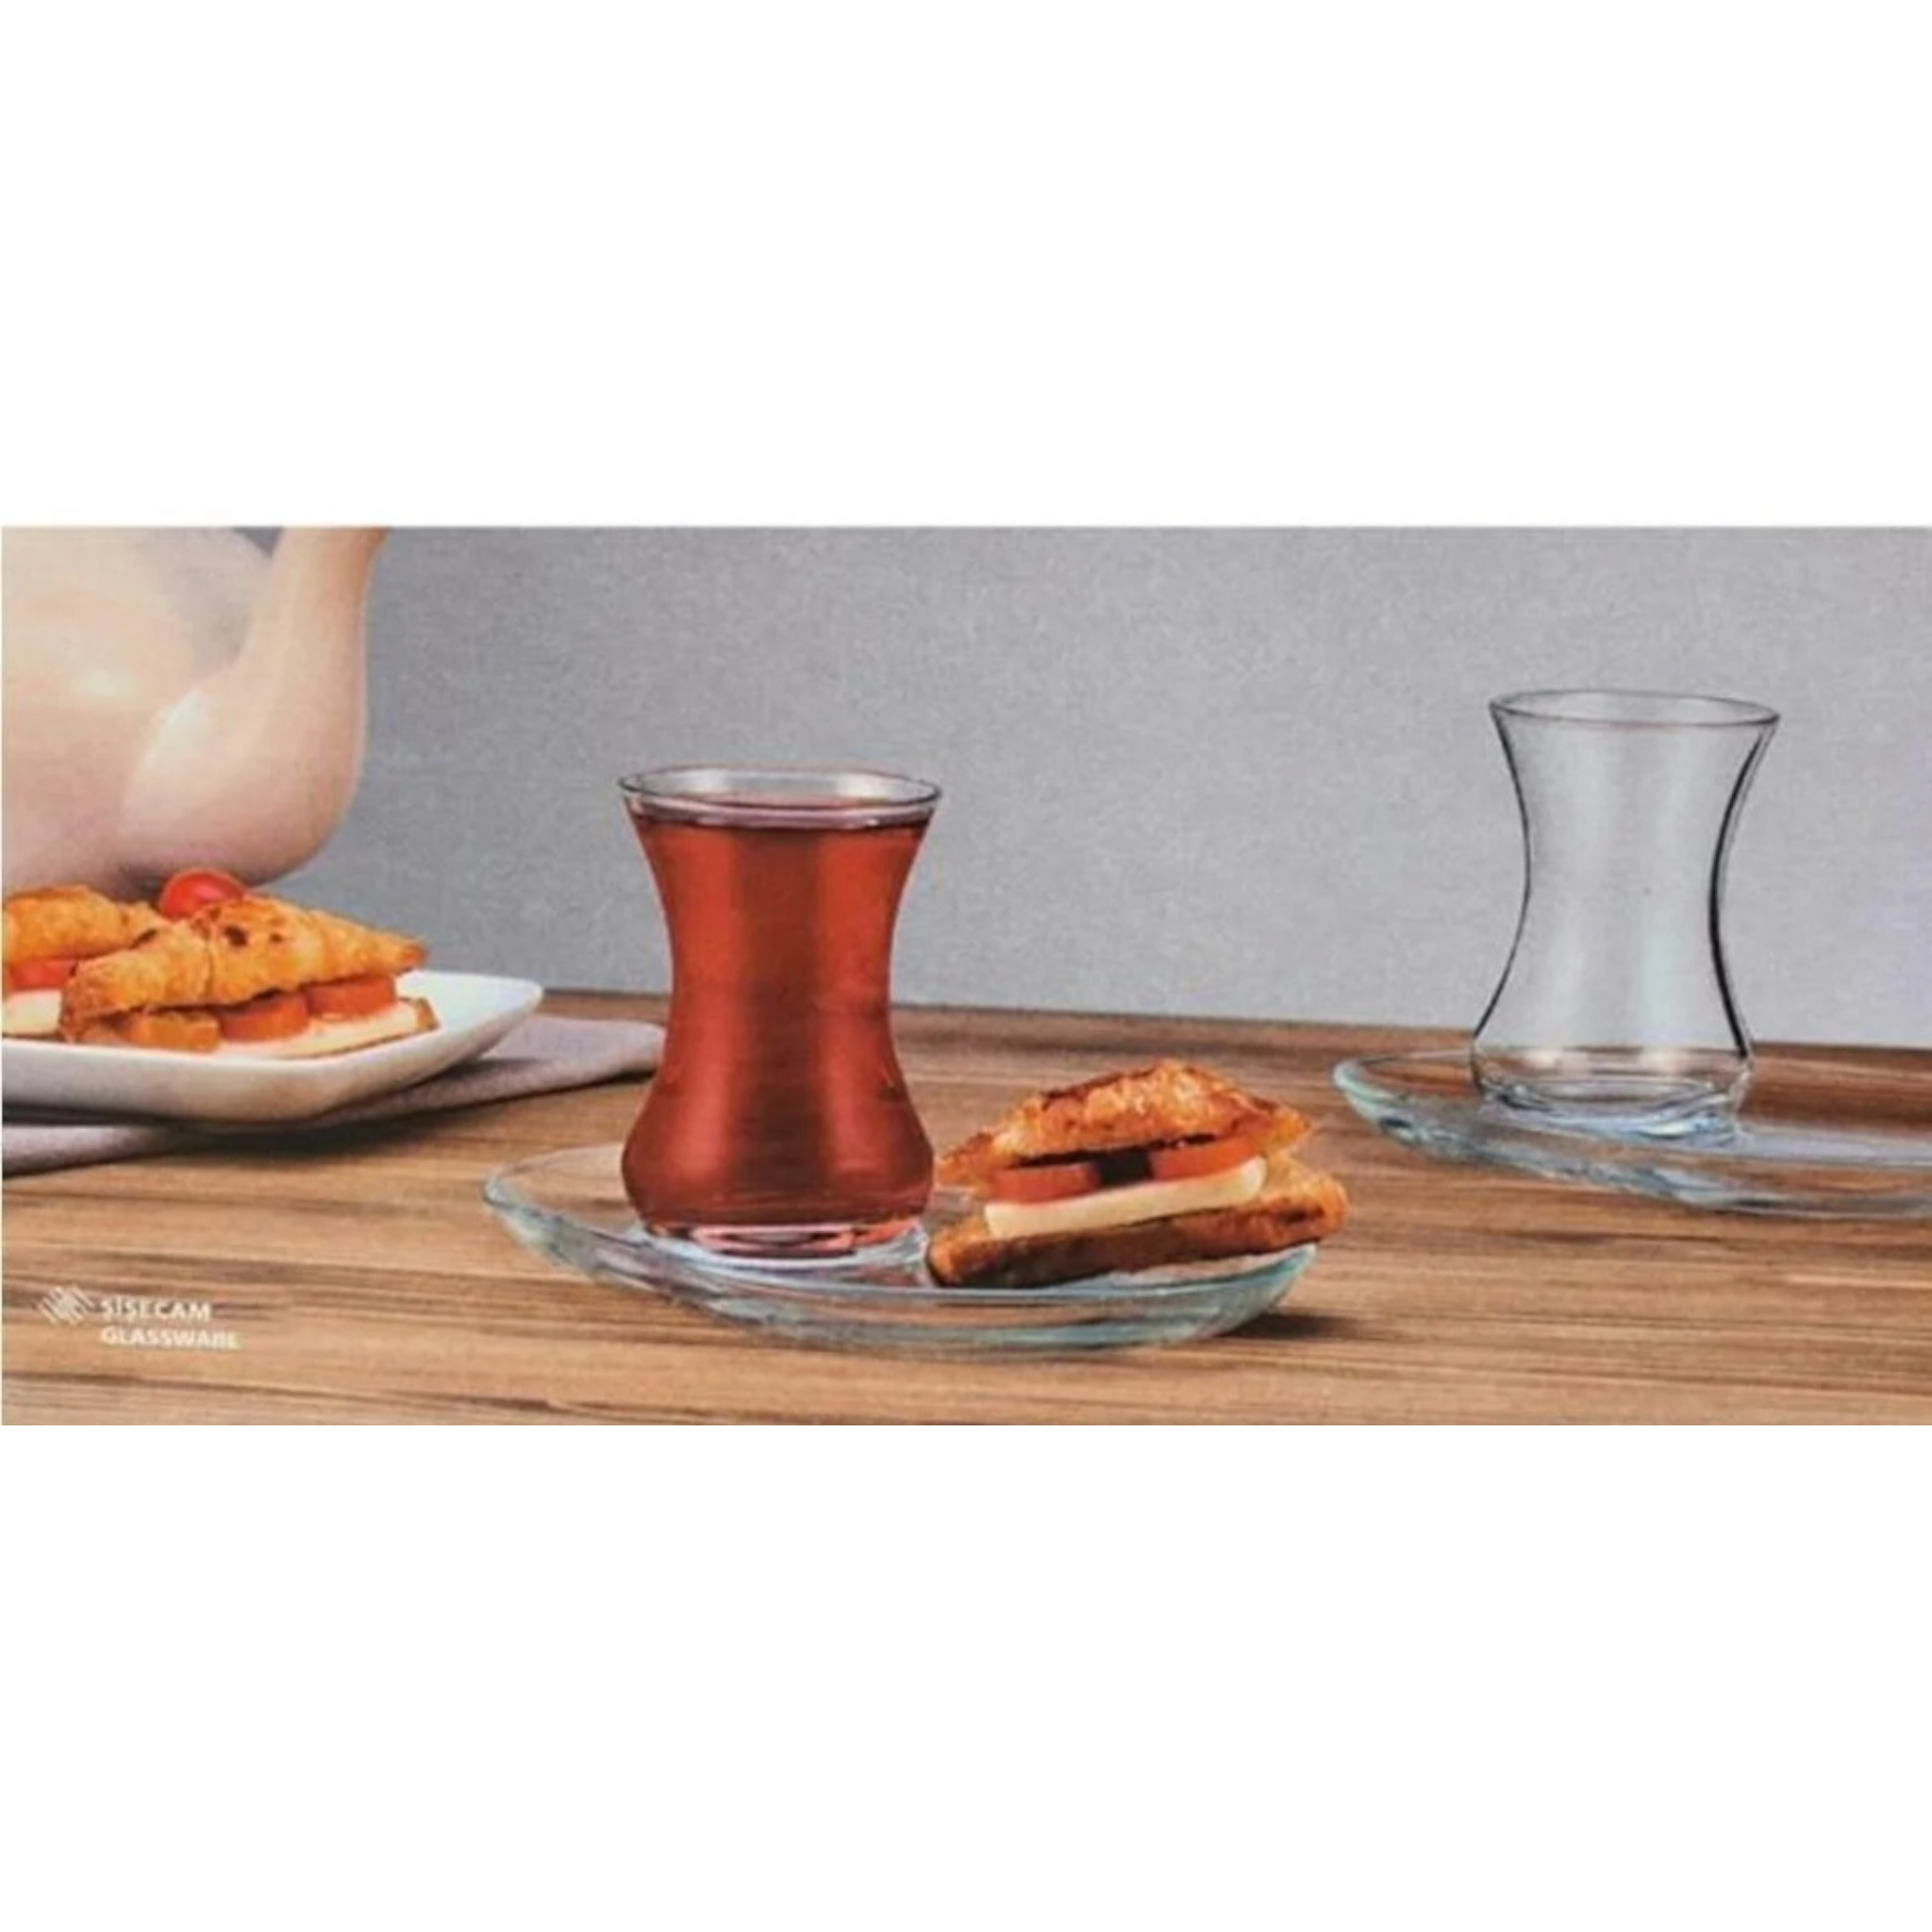 Pasabahce Incebelli Turkish Tea Cup & Saucer 125ml 4pc Set